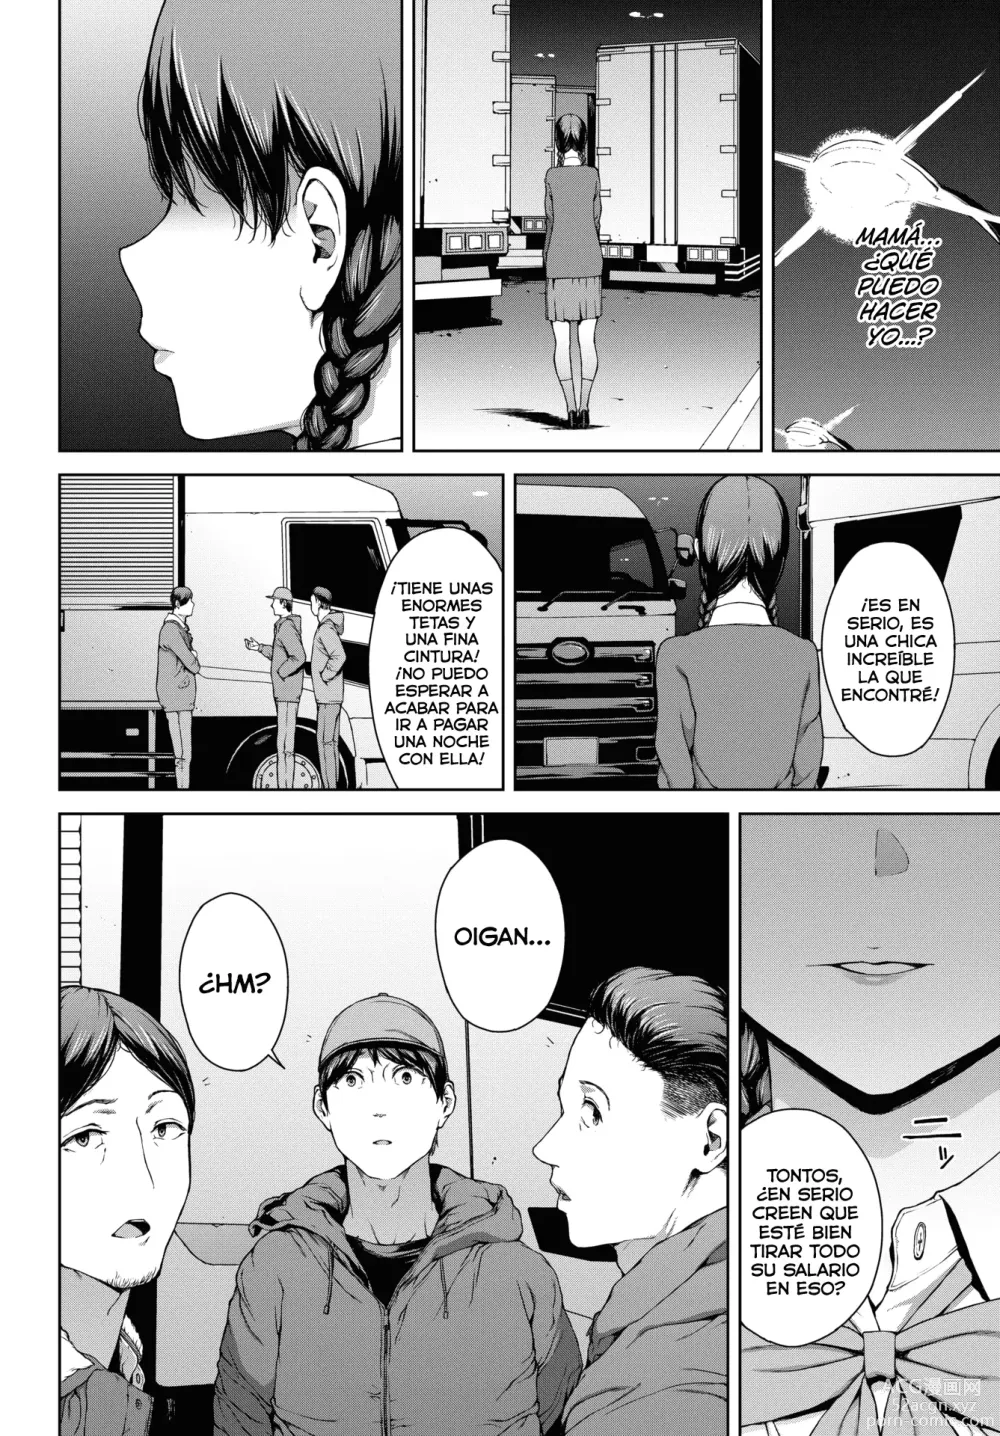 Page 6 of manga Yoriko 4